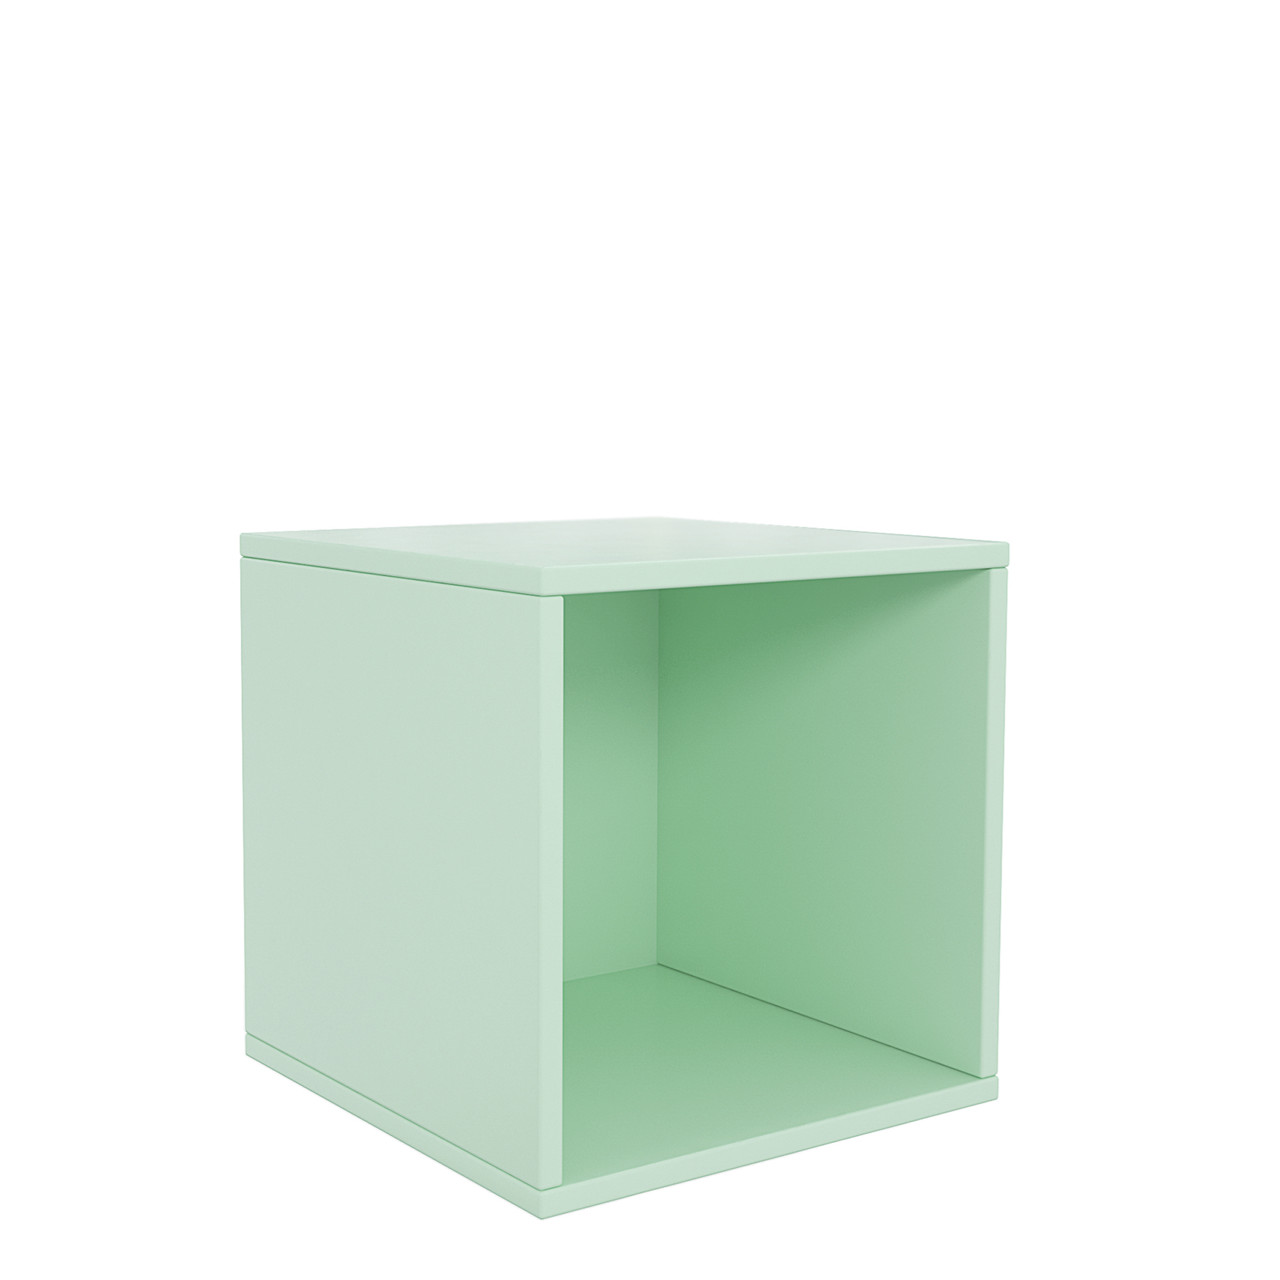 Furniture x Sinnerup BUILD IT UP modul a grøn